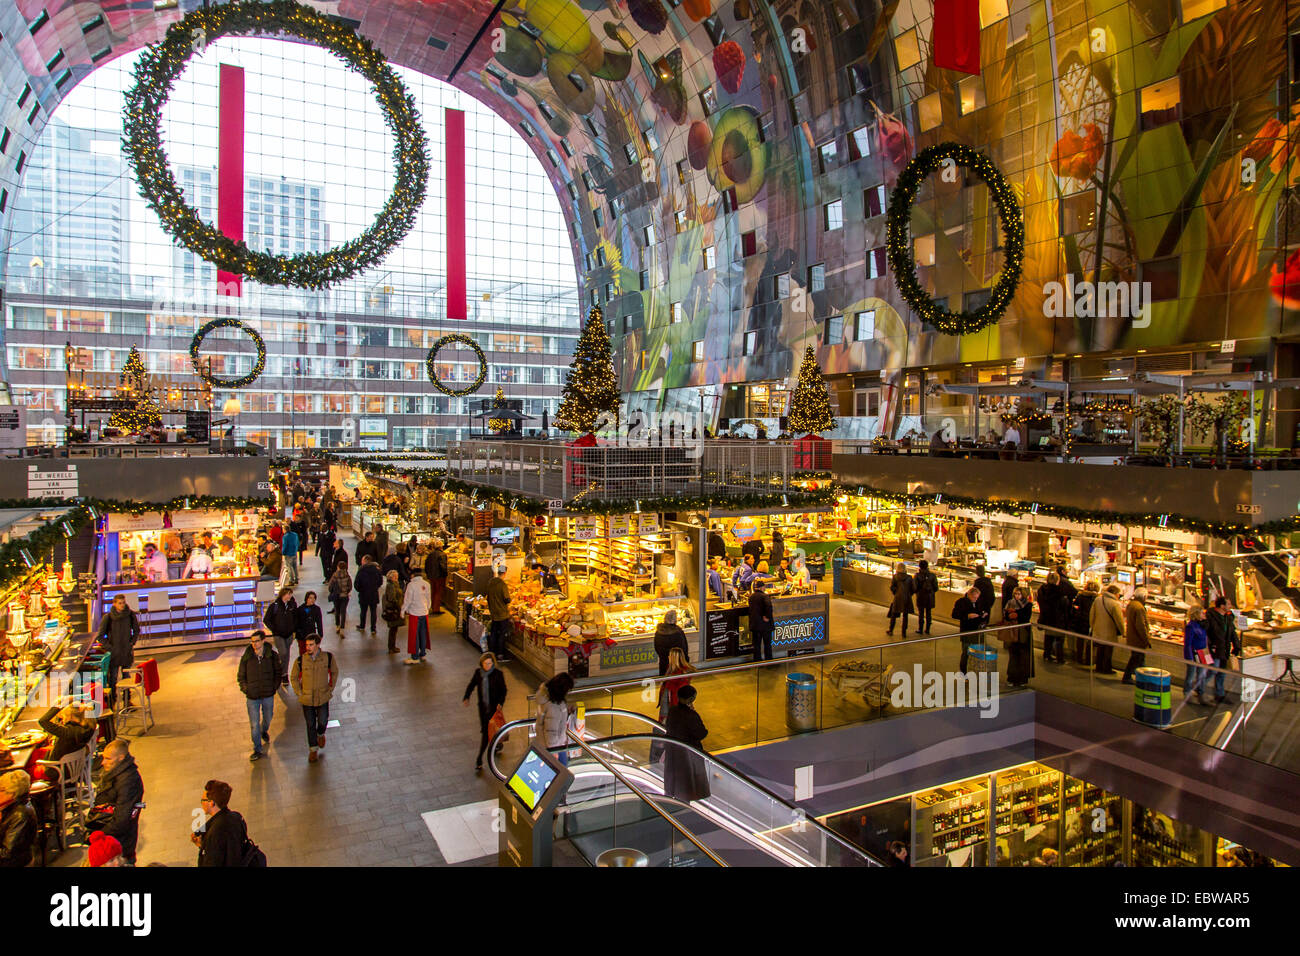 El nuevo Market Hall en Rotterdam, restaurantes, tiendas de alimentación, mercado, pinturas murales gigantes, Foto de stock